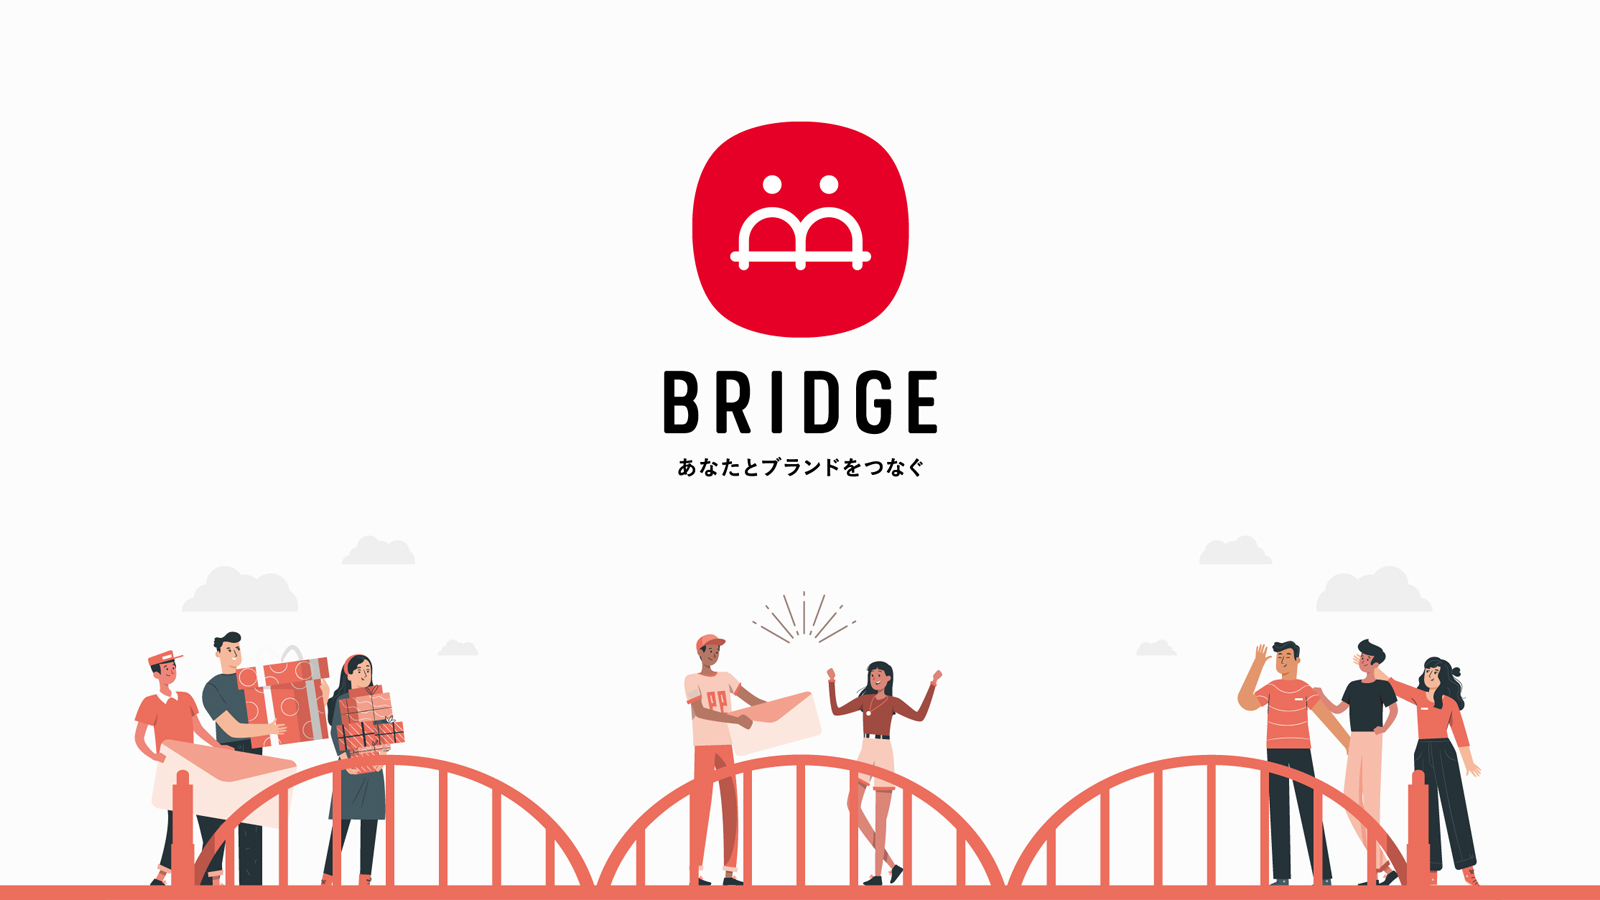 BRIDGE-SNSアカウントコンサルティングサービス-